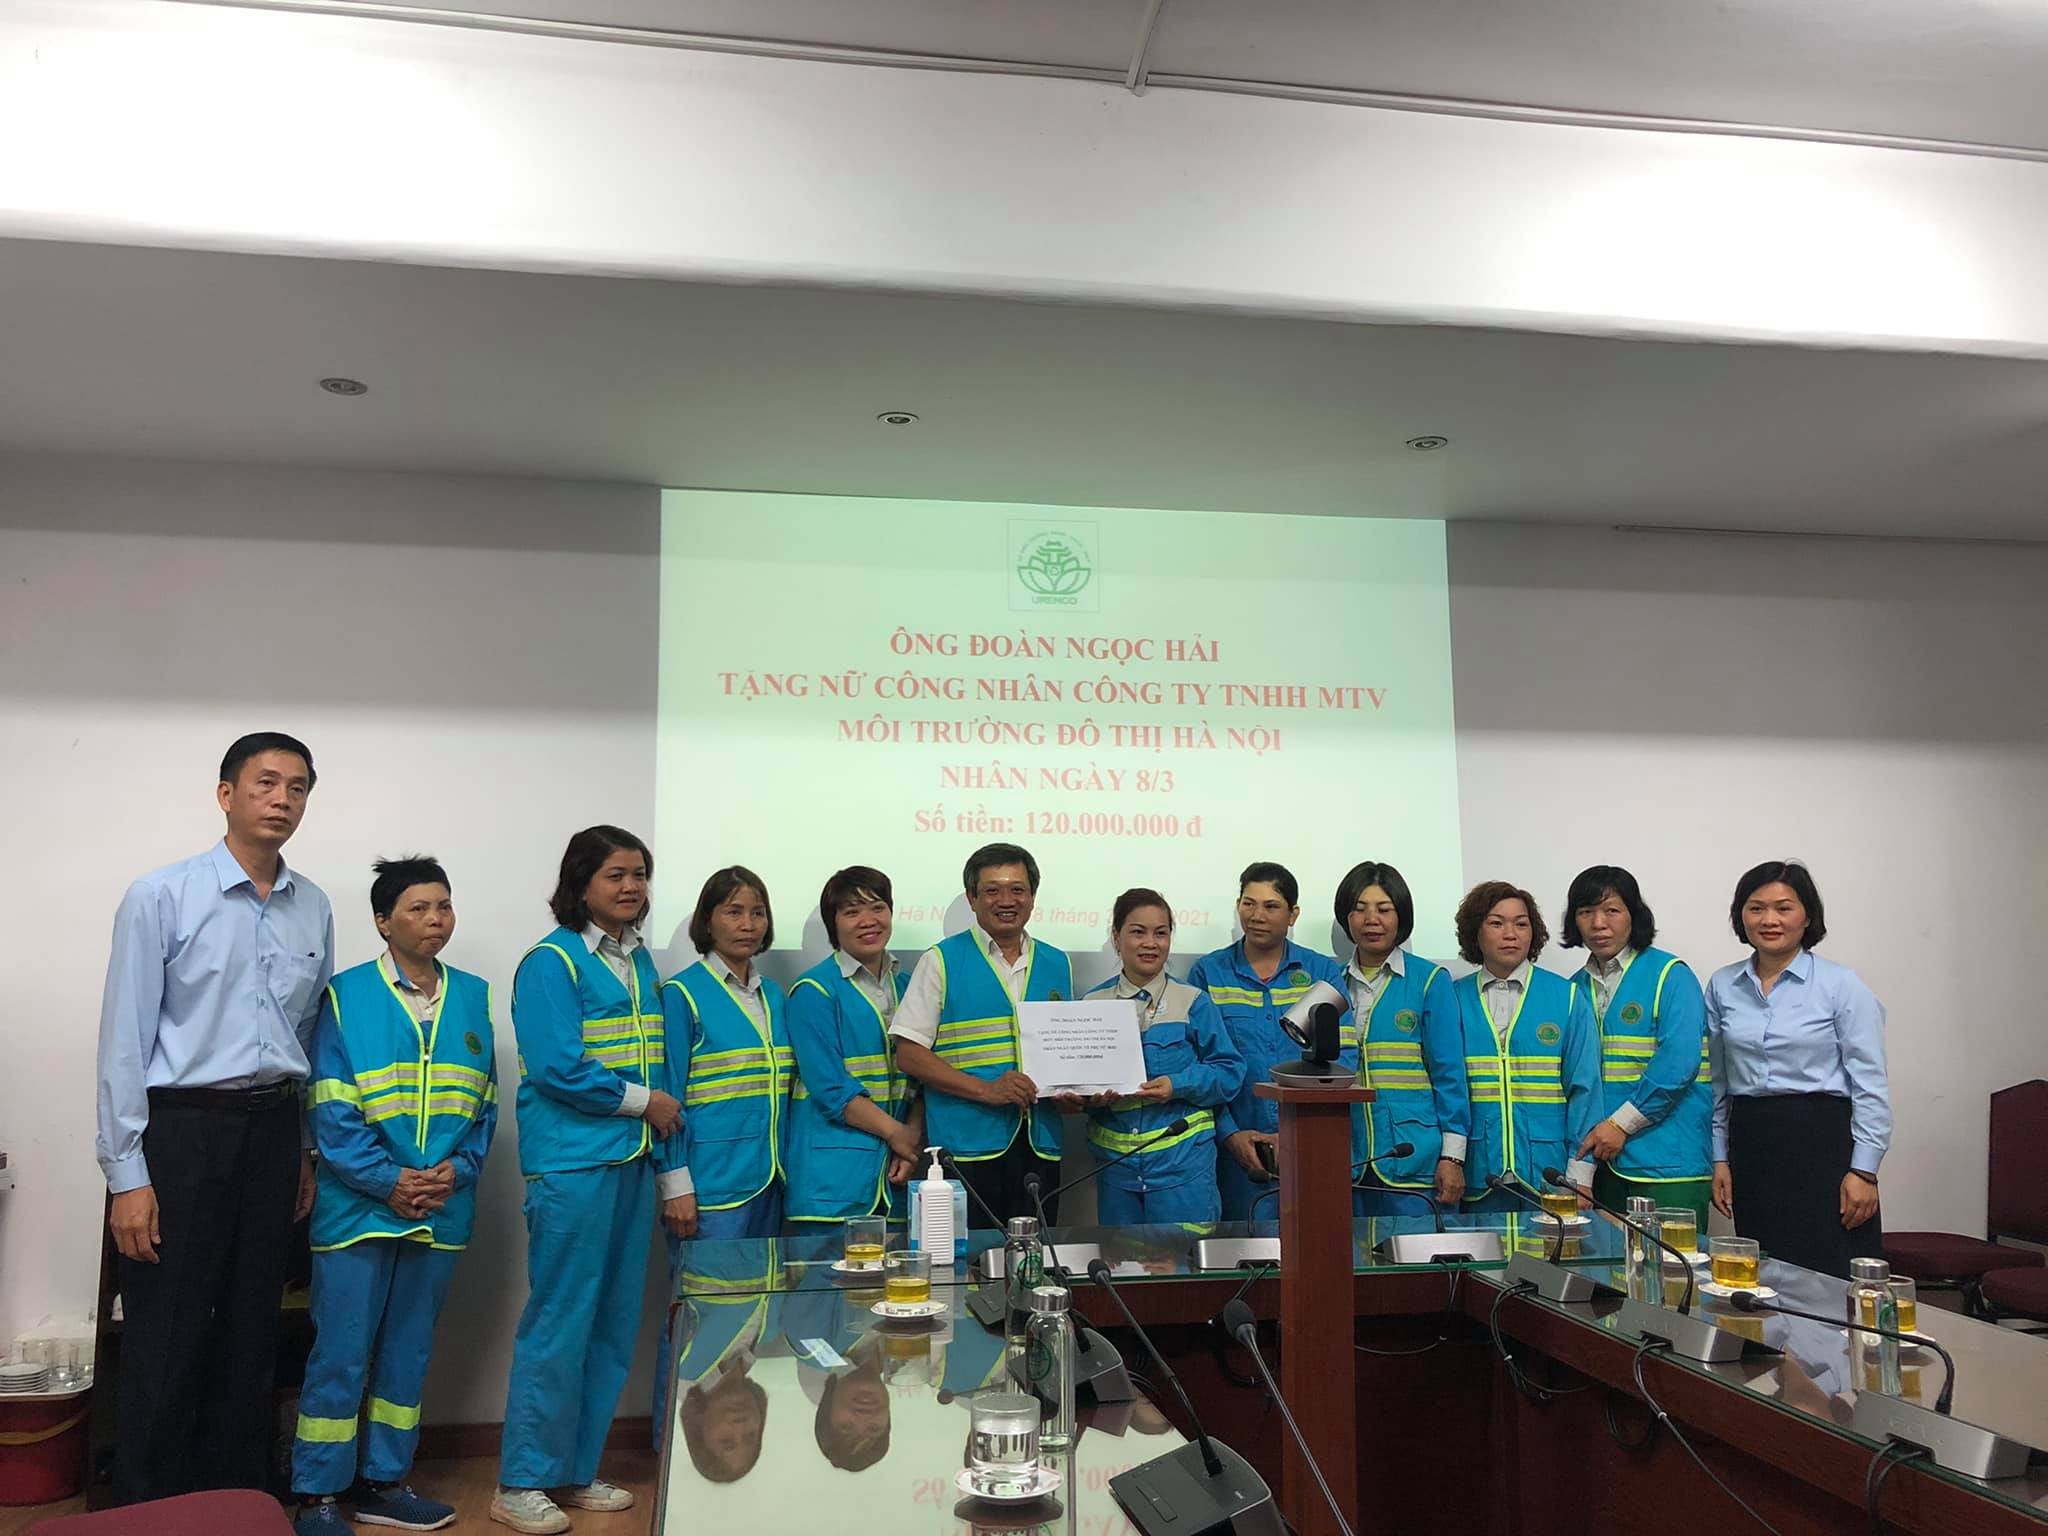 Ông Đoàn Ngọc Hải tặng 120 triệu đồng cho nữ công nhân môi trường Hà Nội nhân dịp 8/3.